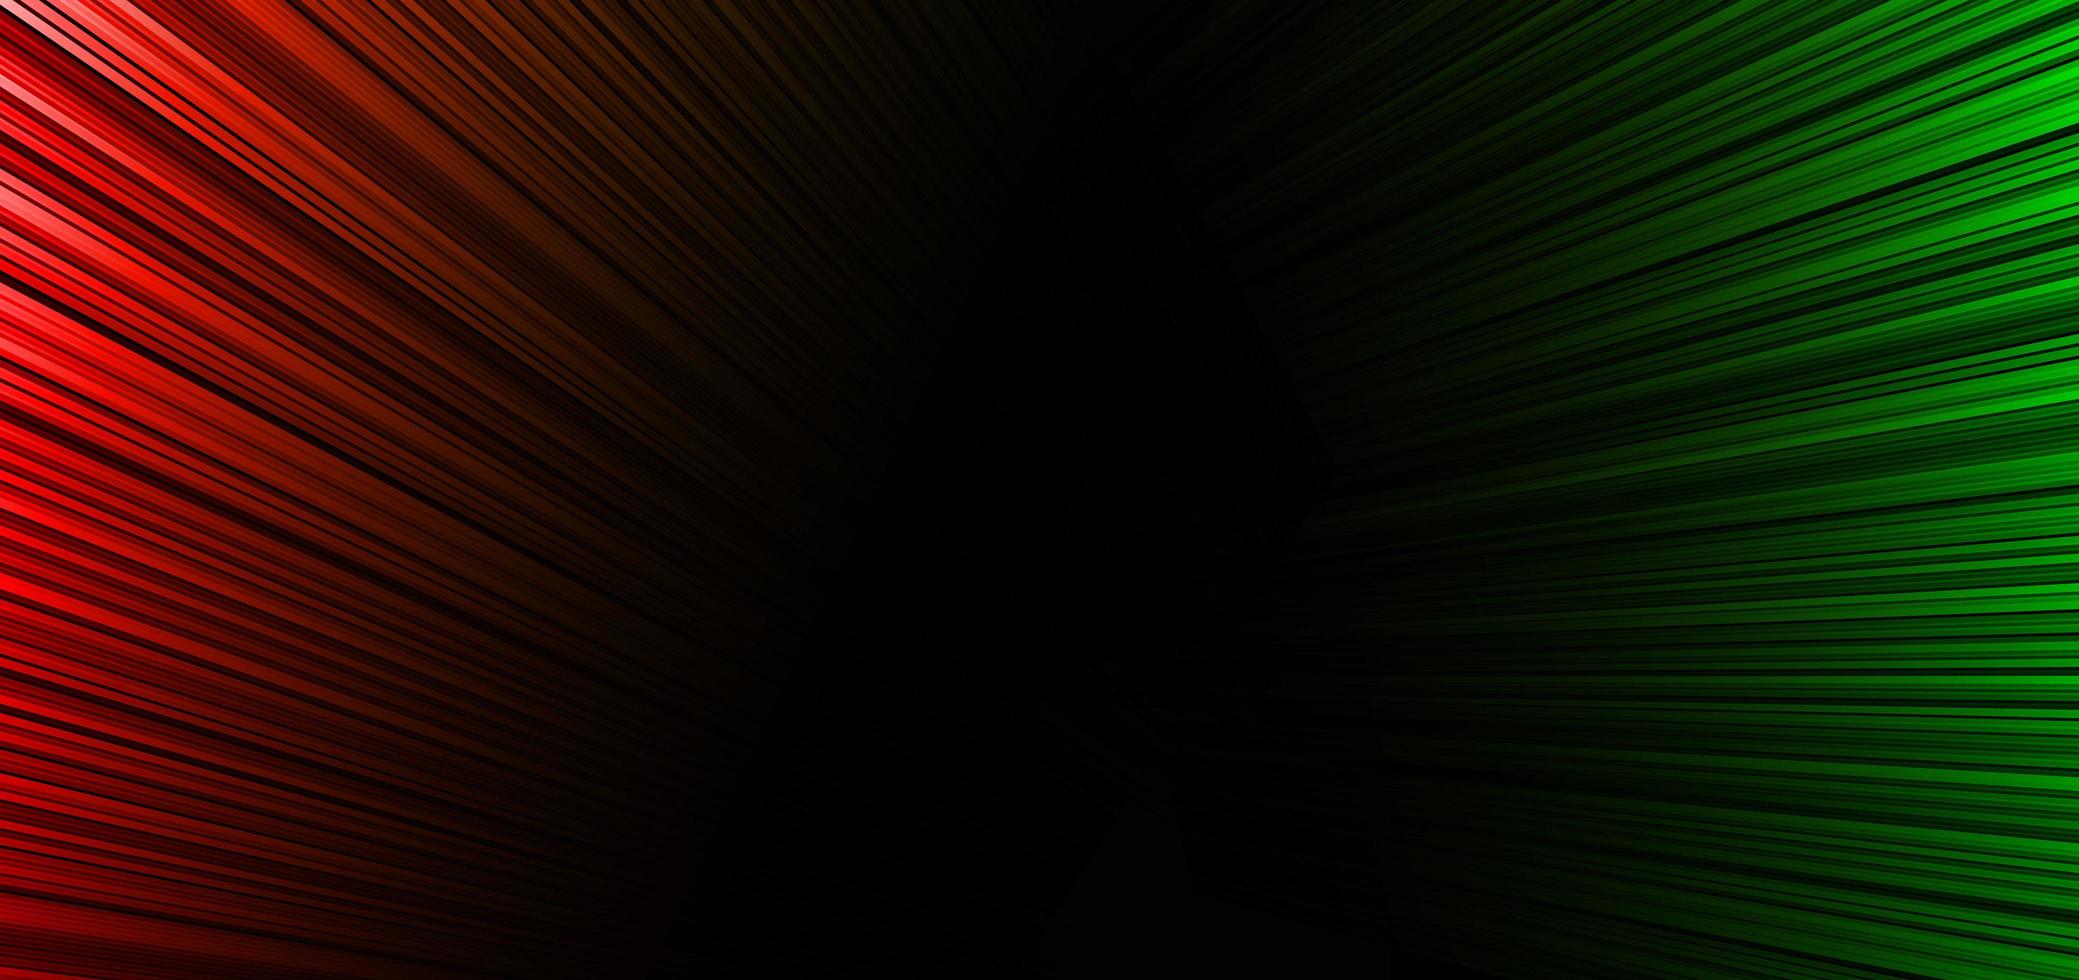 abstrato vermelho e verde listra linhas diagonais luz de fundo. vetor